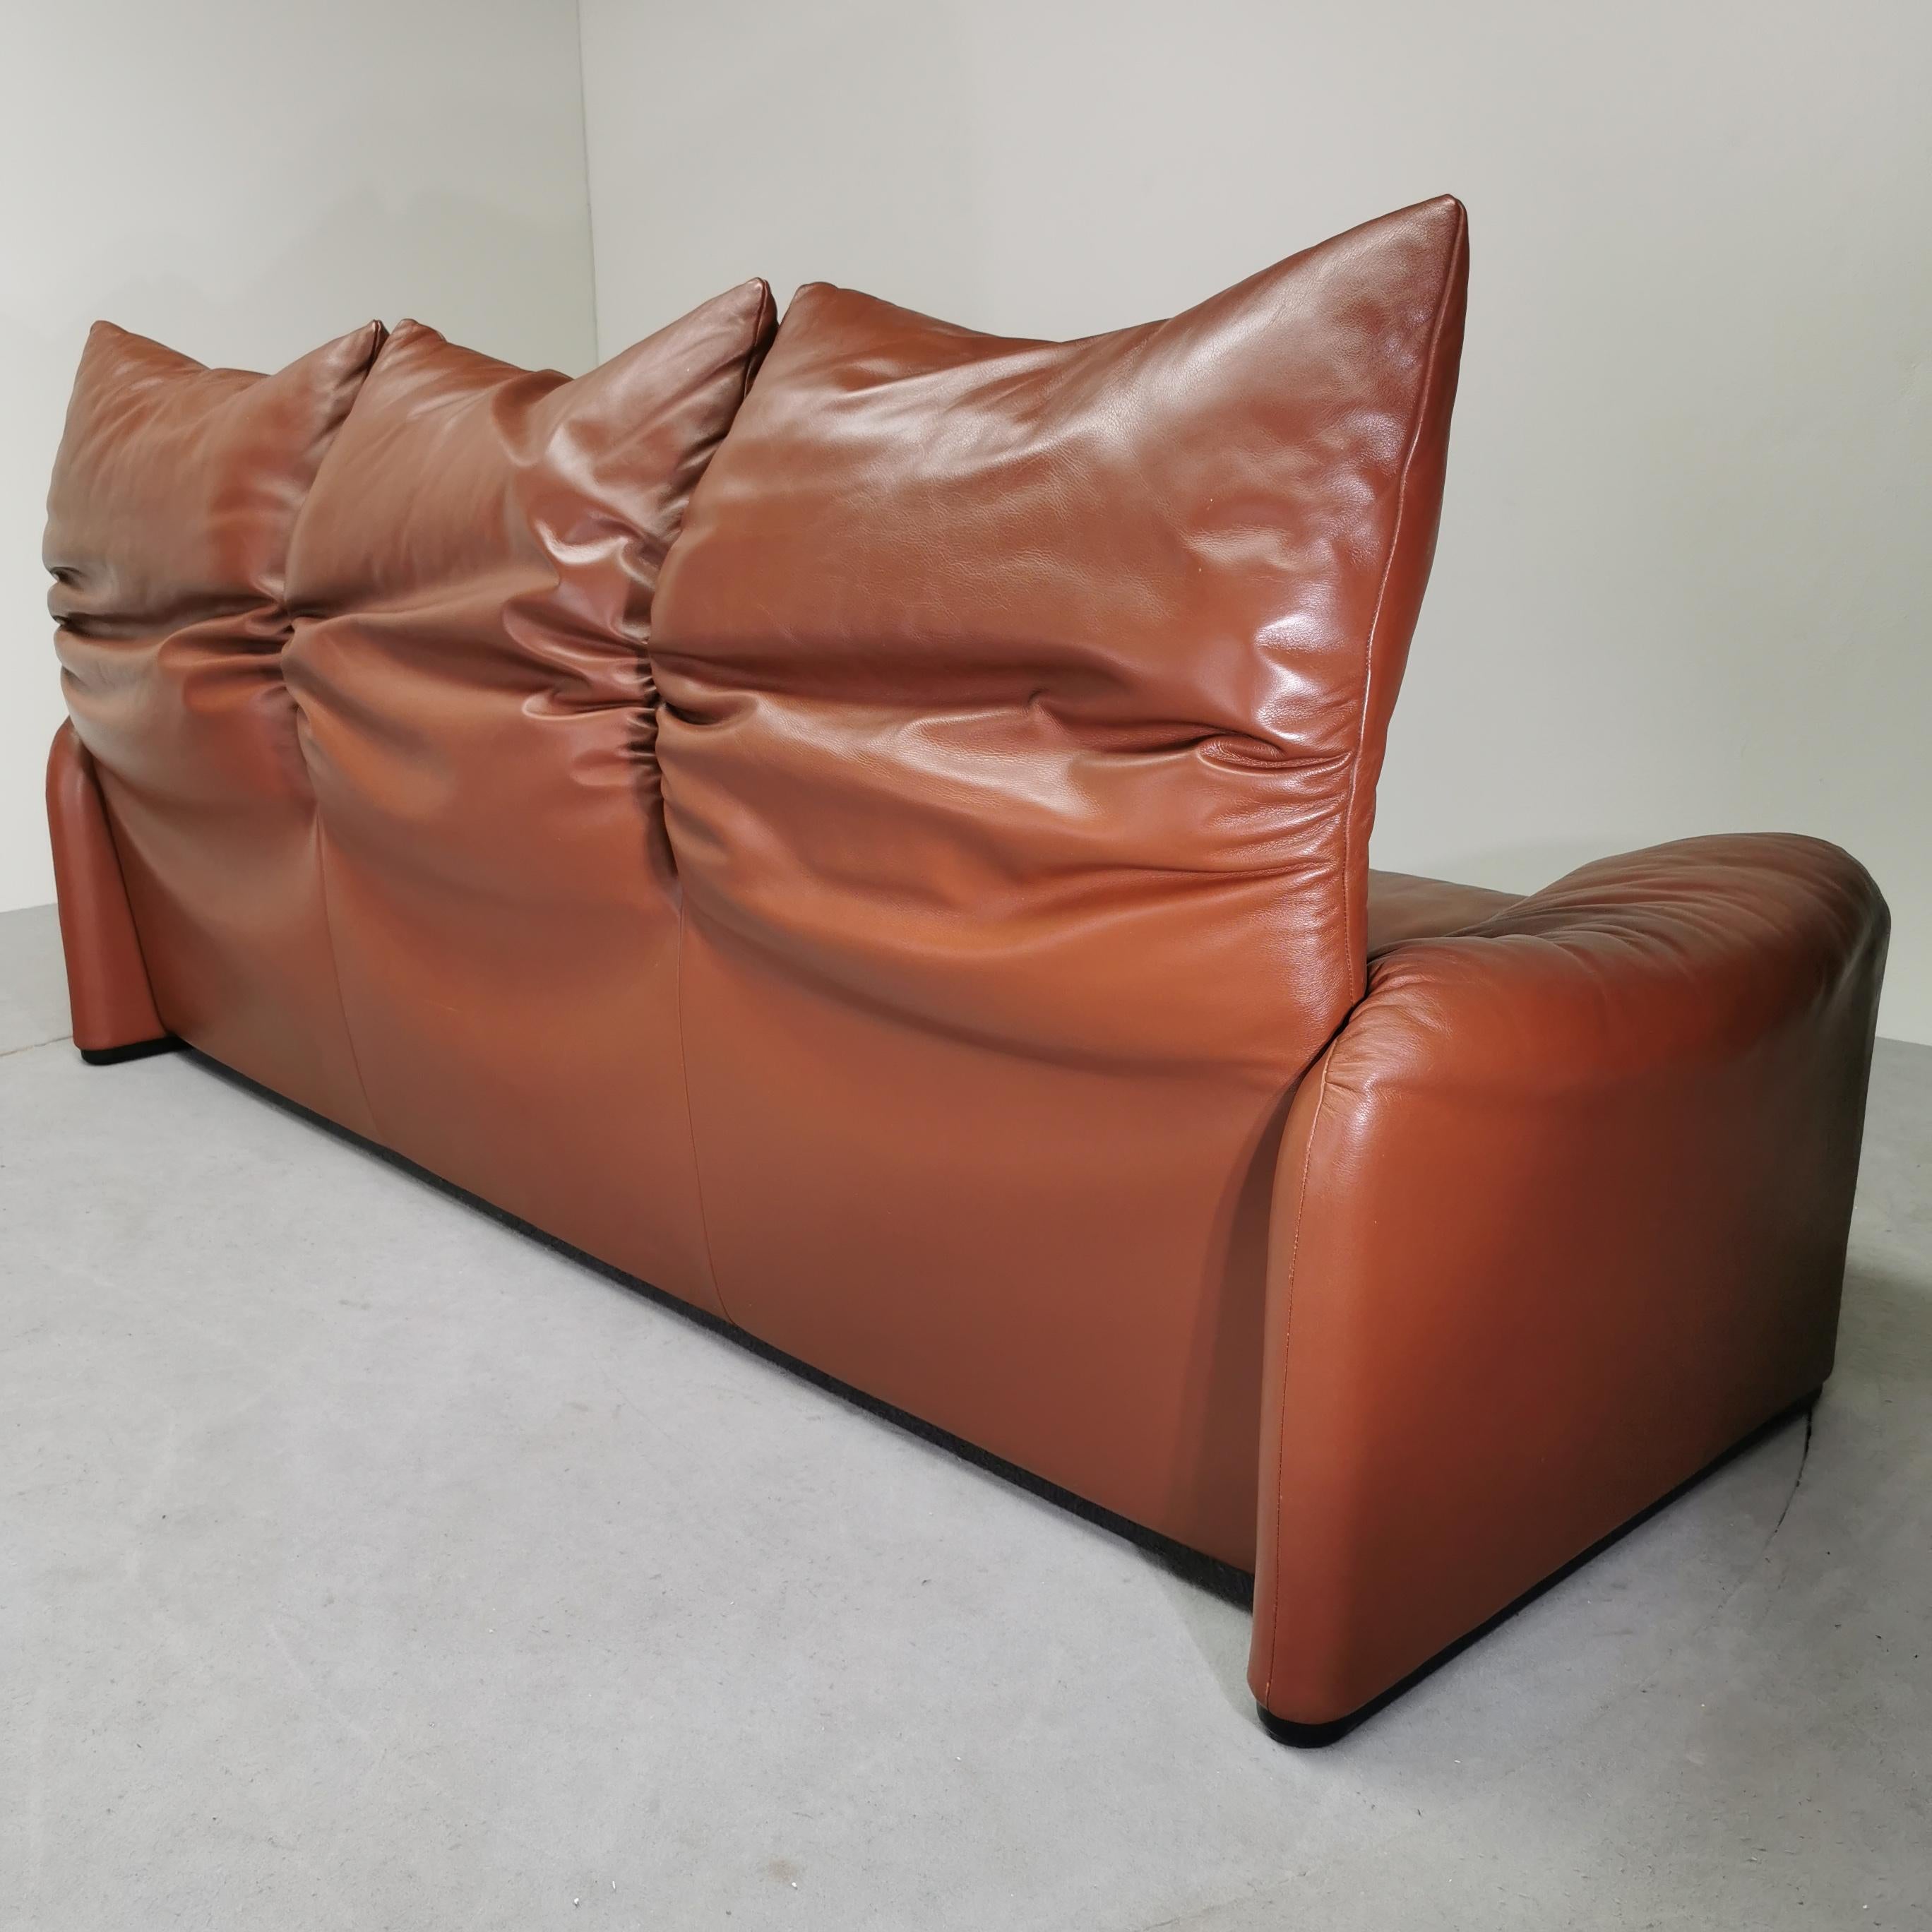 Maralunga sofa Cassina 70's leather For Sale 4